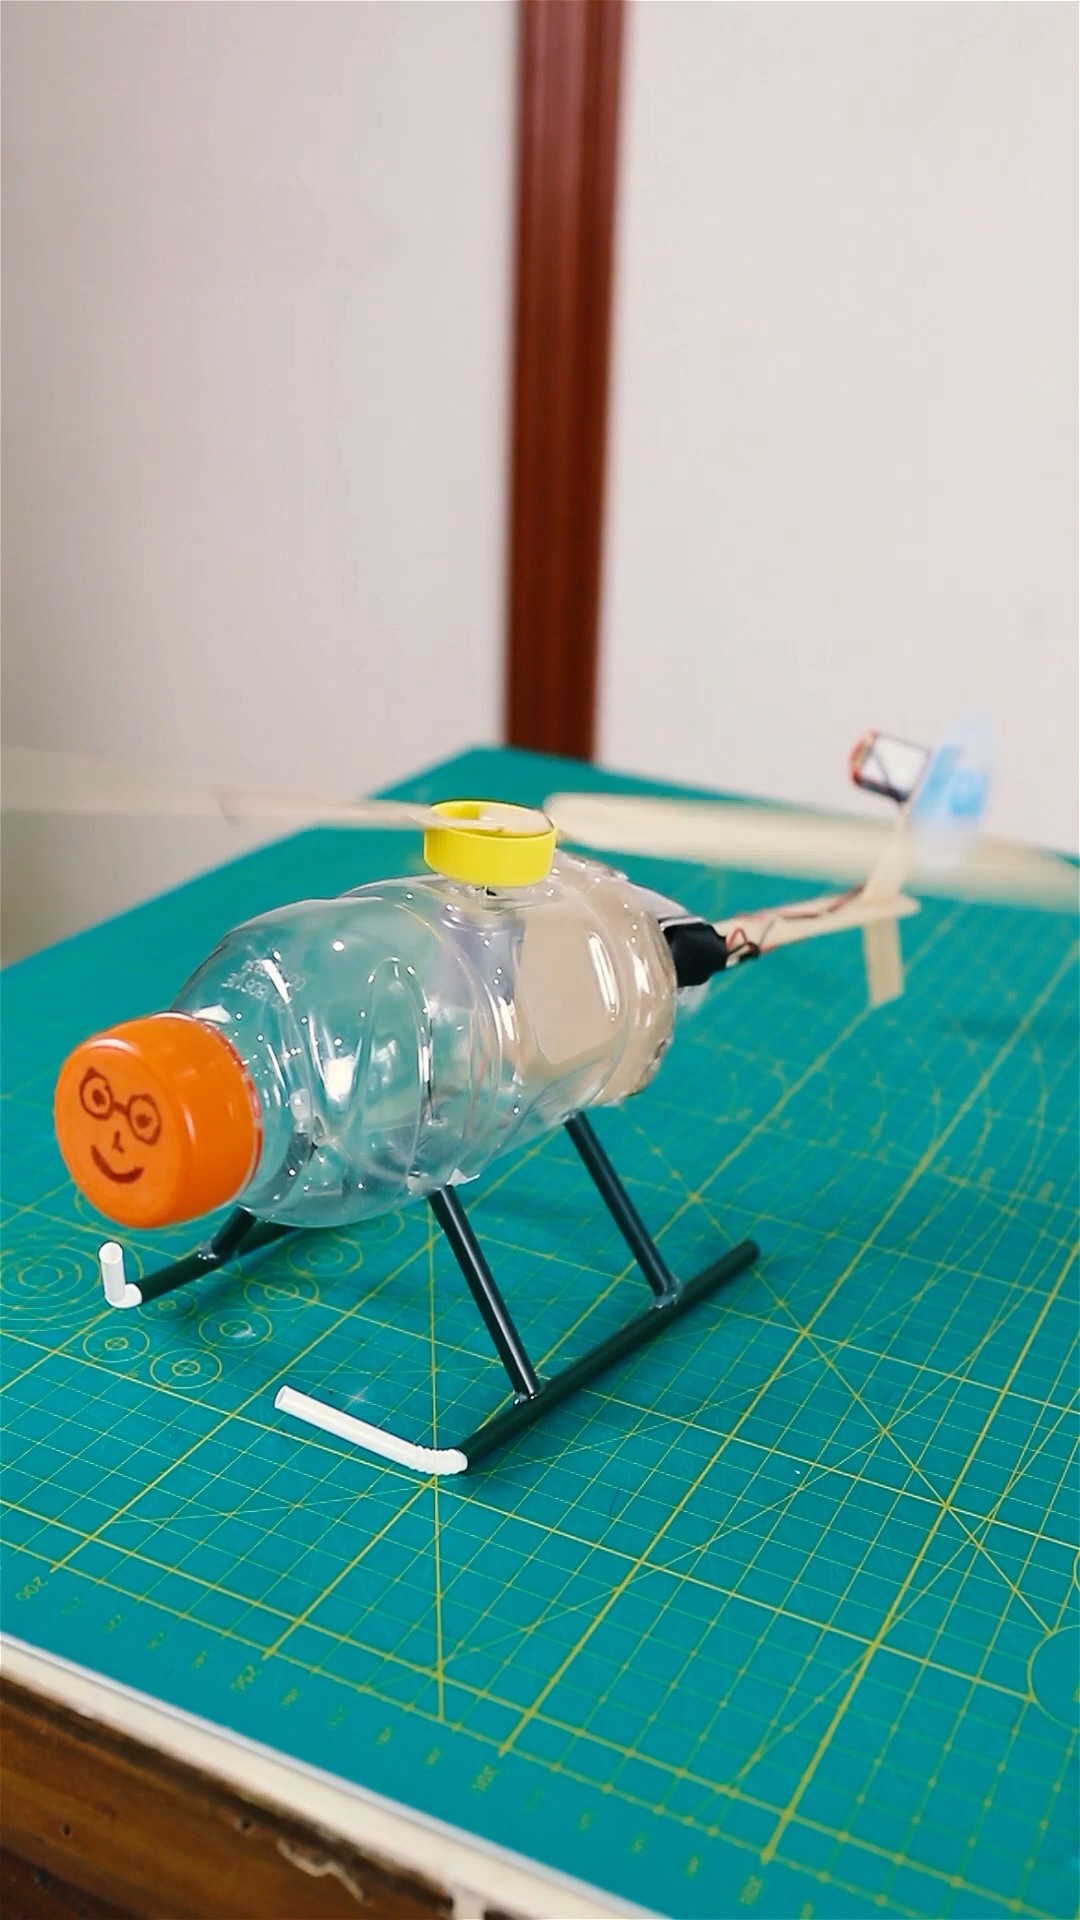 瓶子直升机模型教程(下集),学起来!